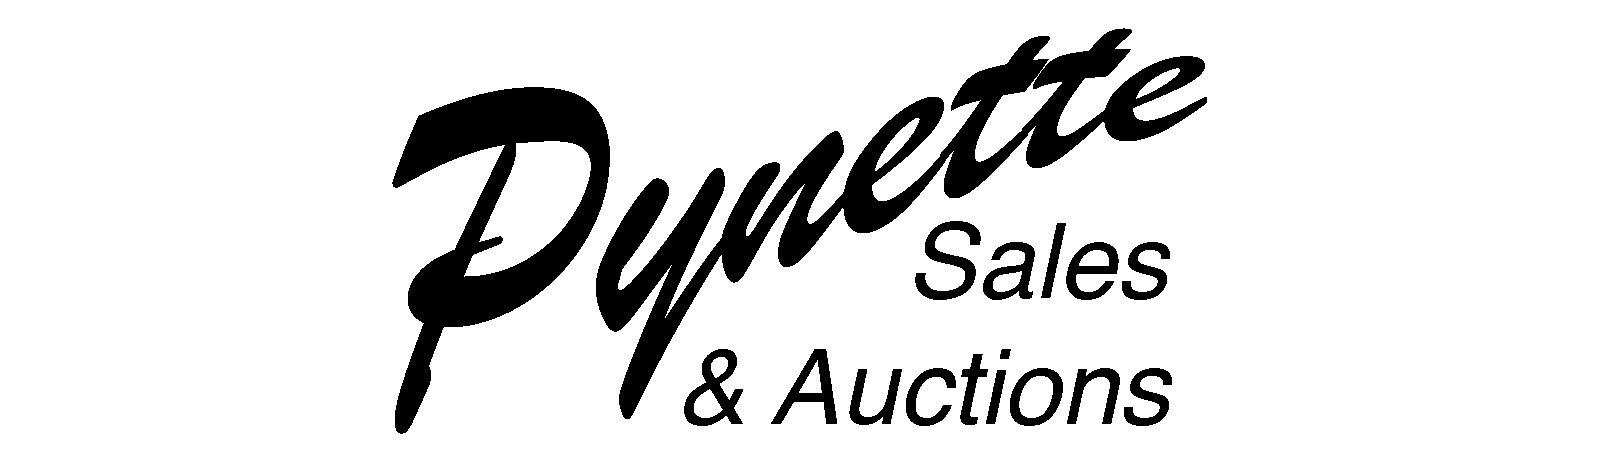 Pynette Sales & Auction | AuctionNinja